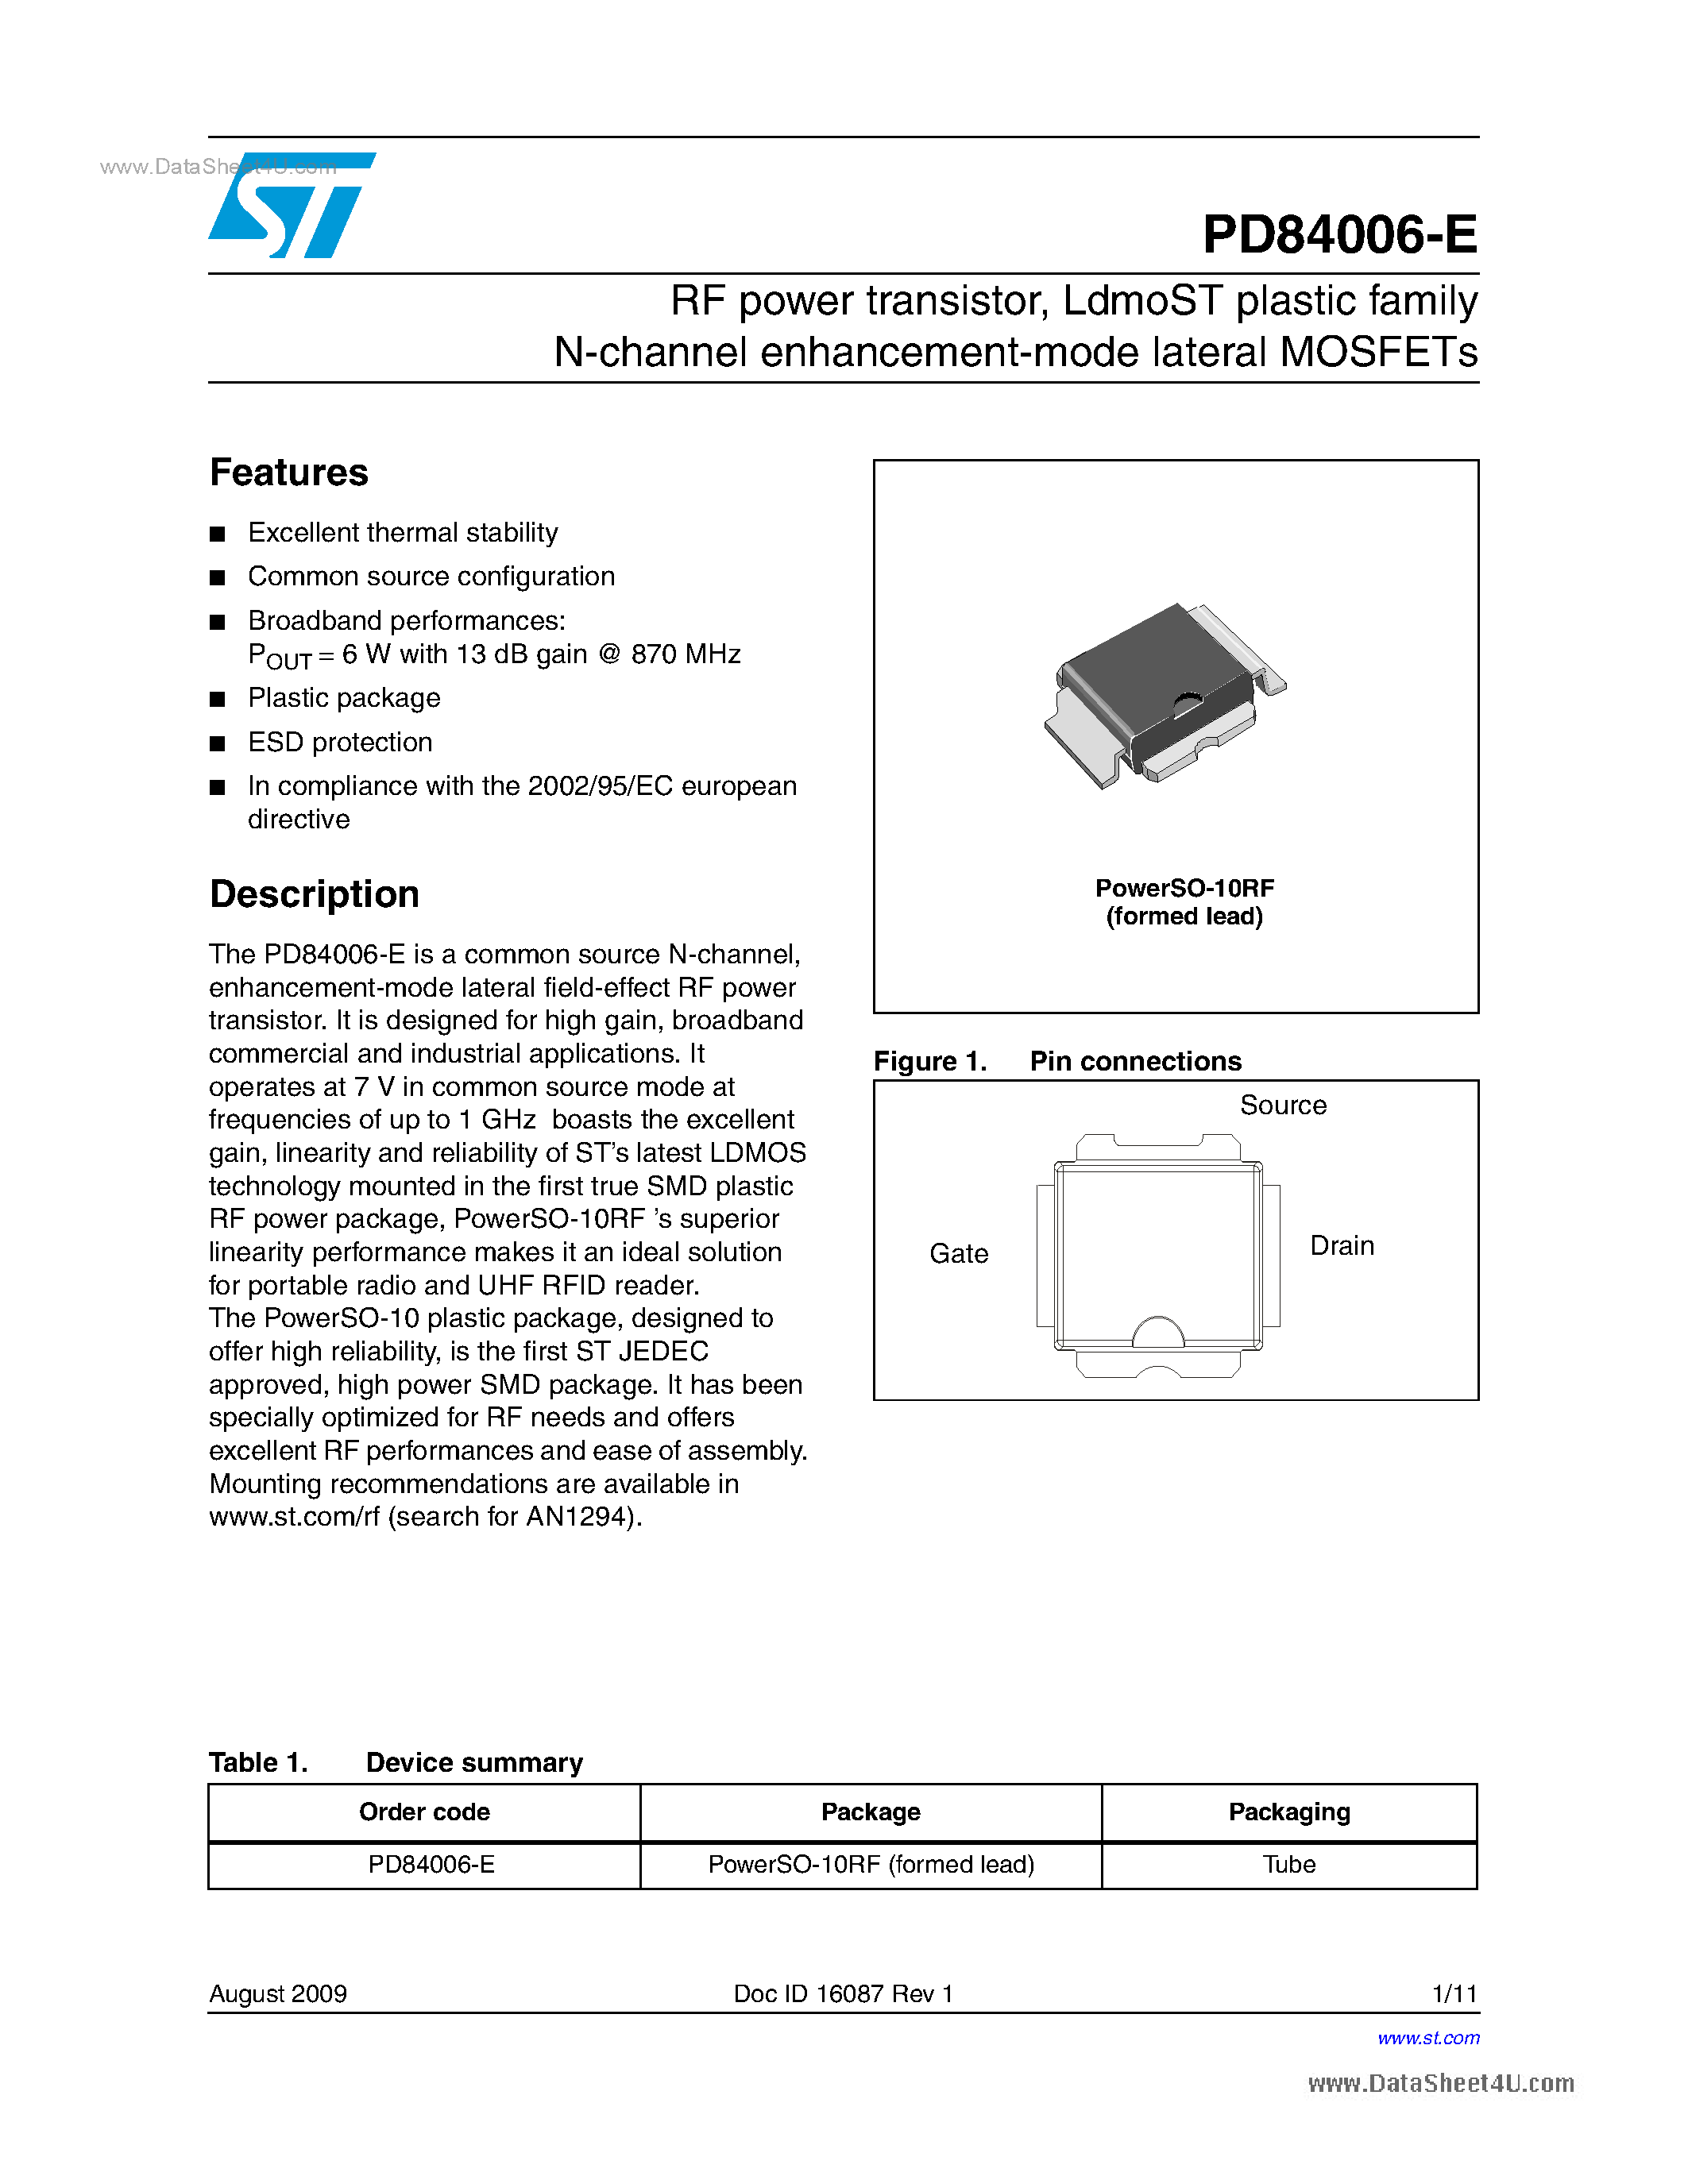 Даташит PD84006-E - RF Power Transistor страница 1